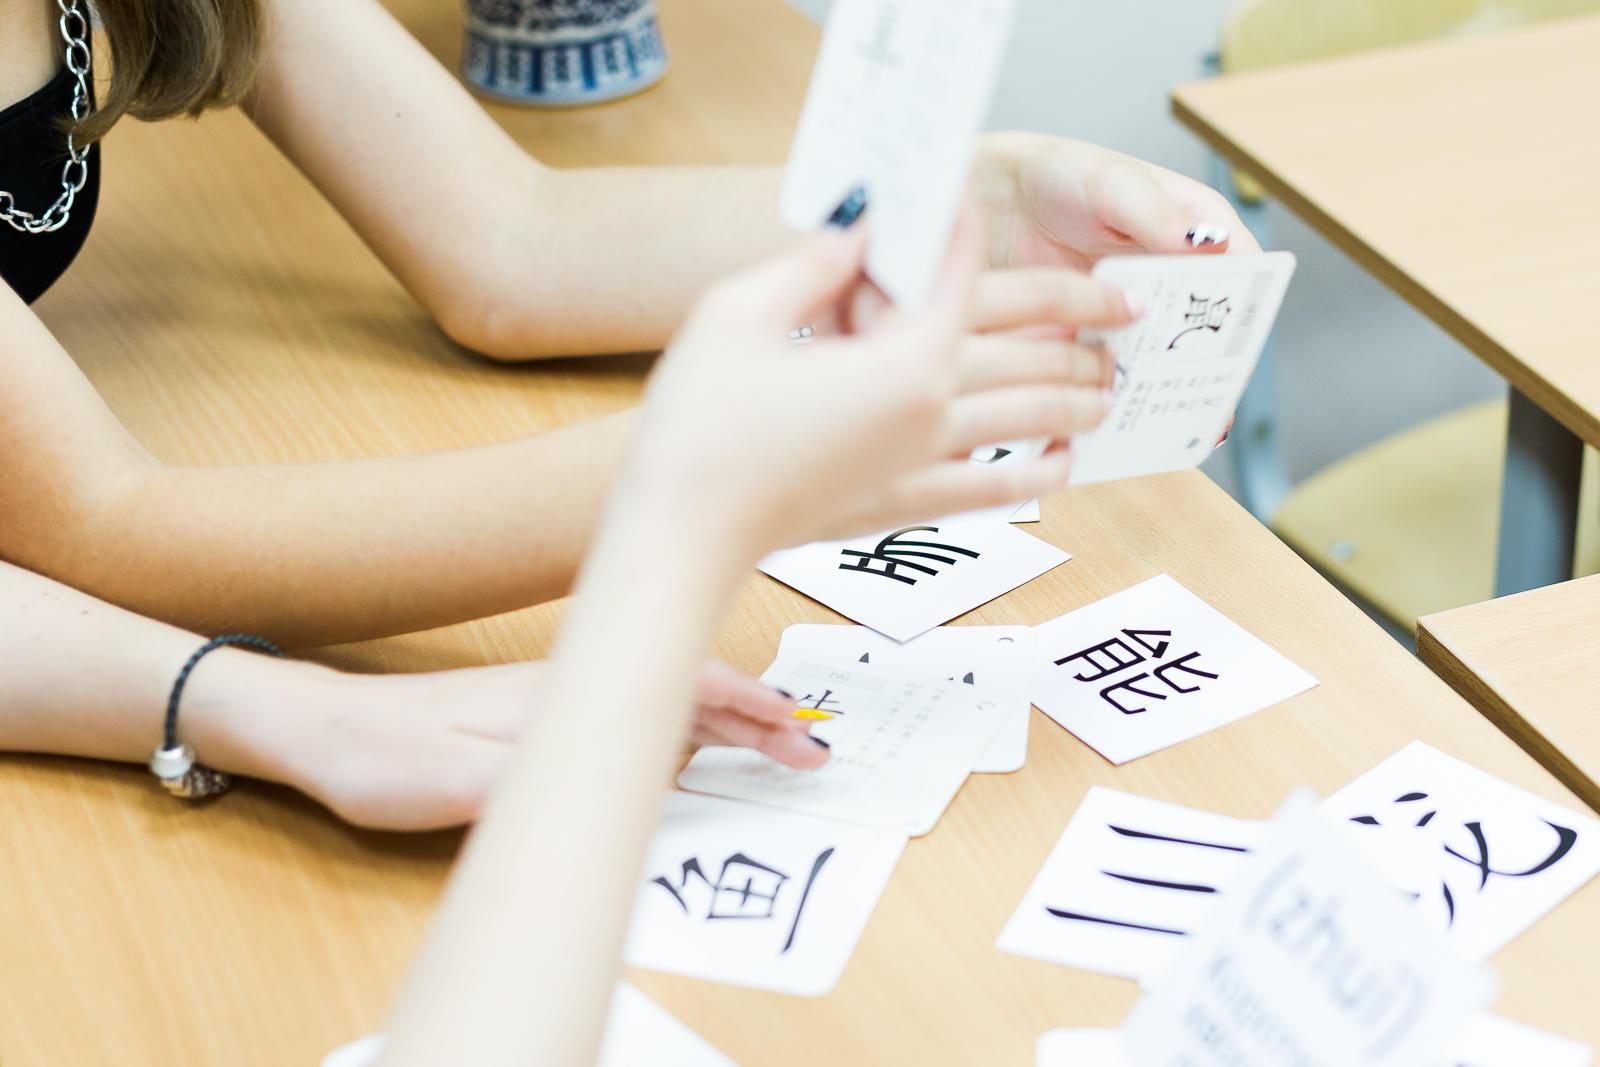 изучение китайского языка с помощью карточек для запоминания